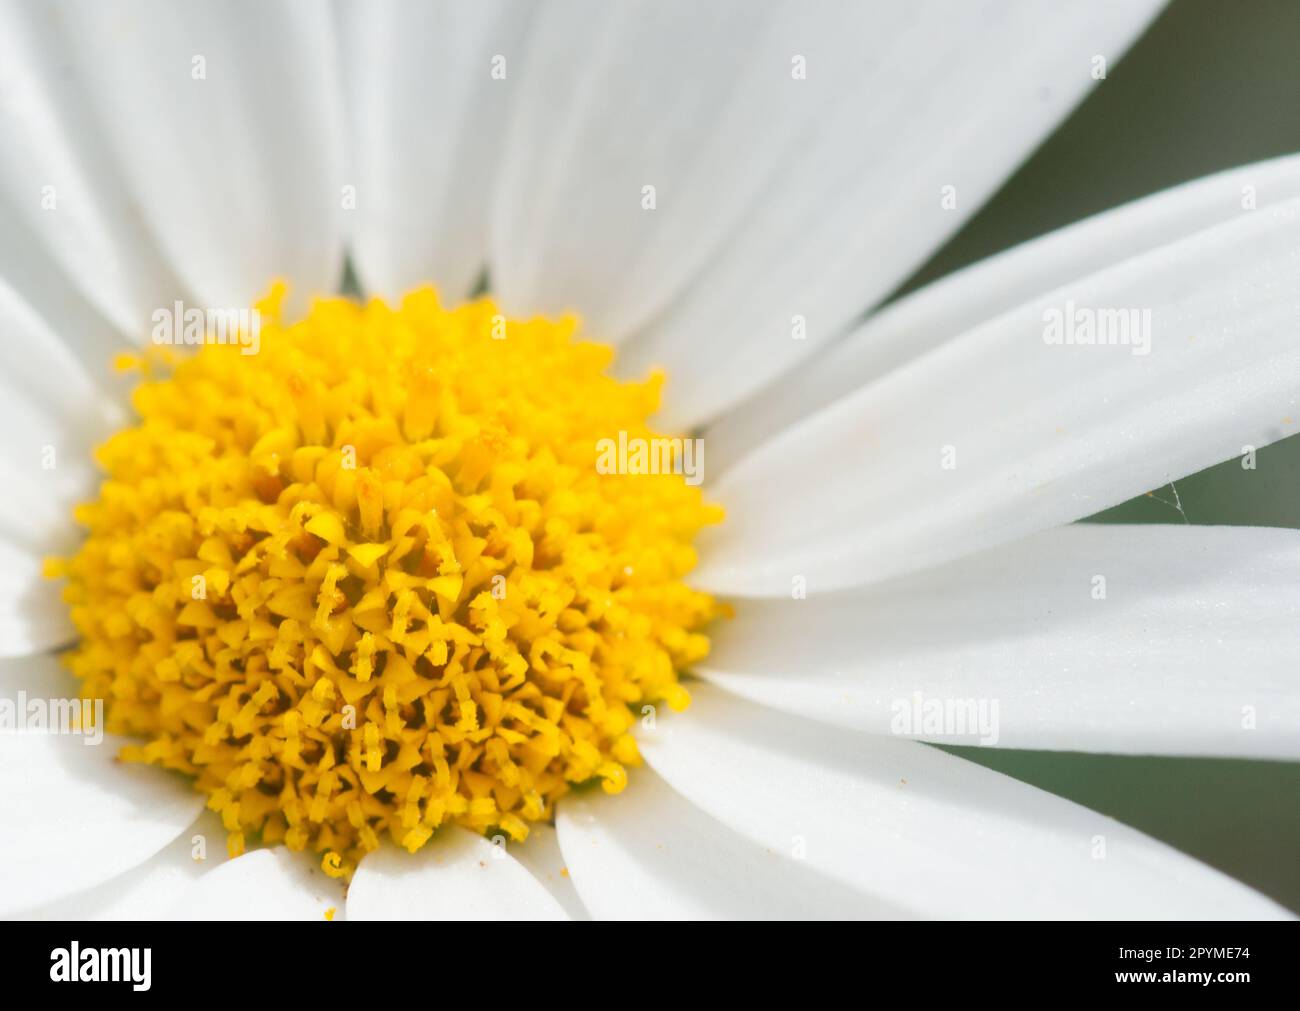 Chrysanthemum marganta white large daisy close-up Stock Photo